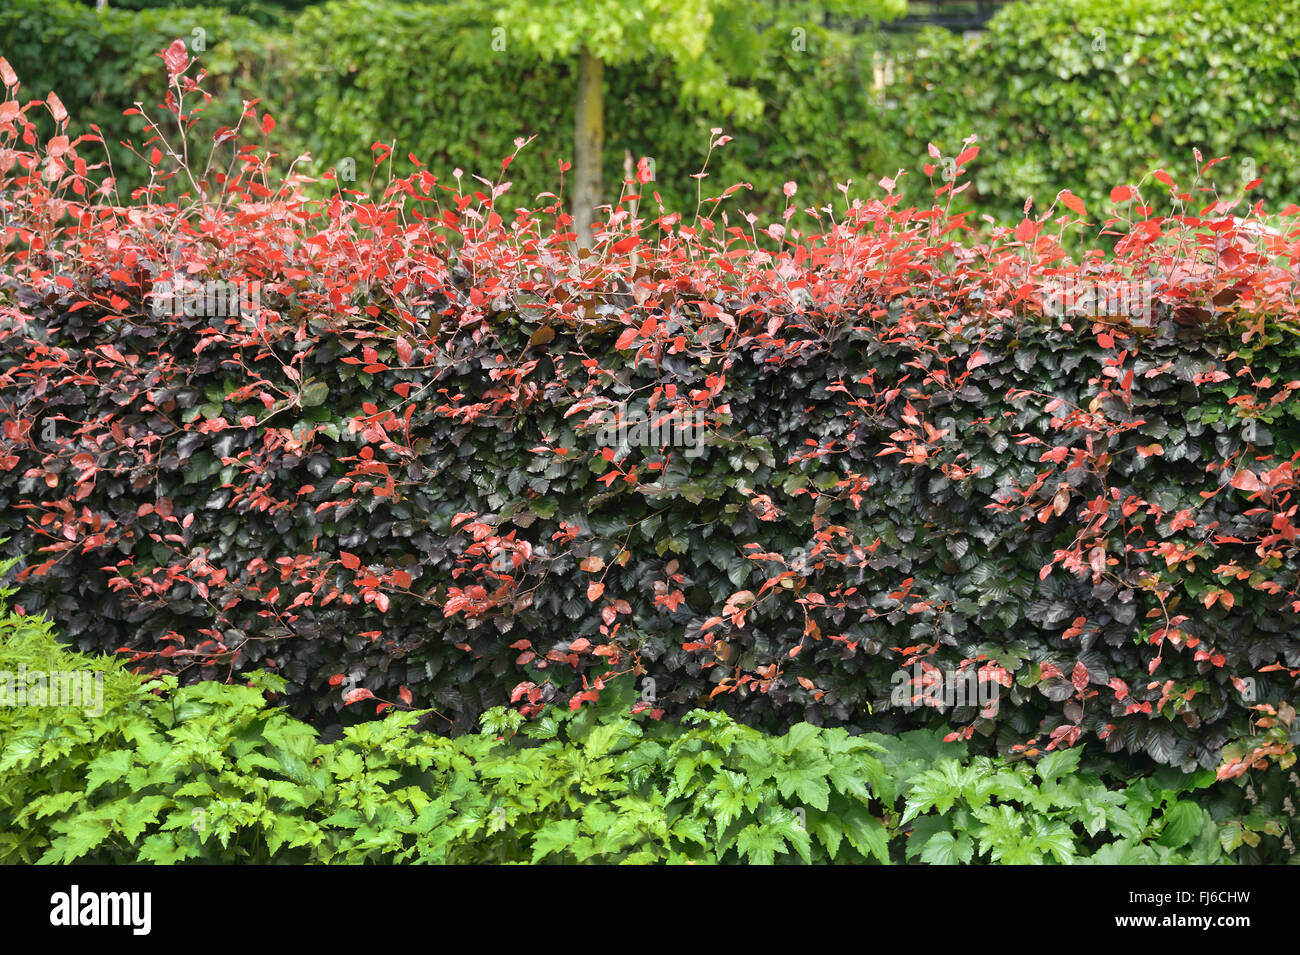 copper beech (Fagus sylvatica var. purpurea, Fagus sylvatica 'Atropunicea', Fagus sylvatica Atropunicea), hedge of cultivar Atropunicea, Netherlands Stock Photo